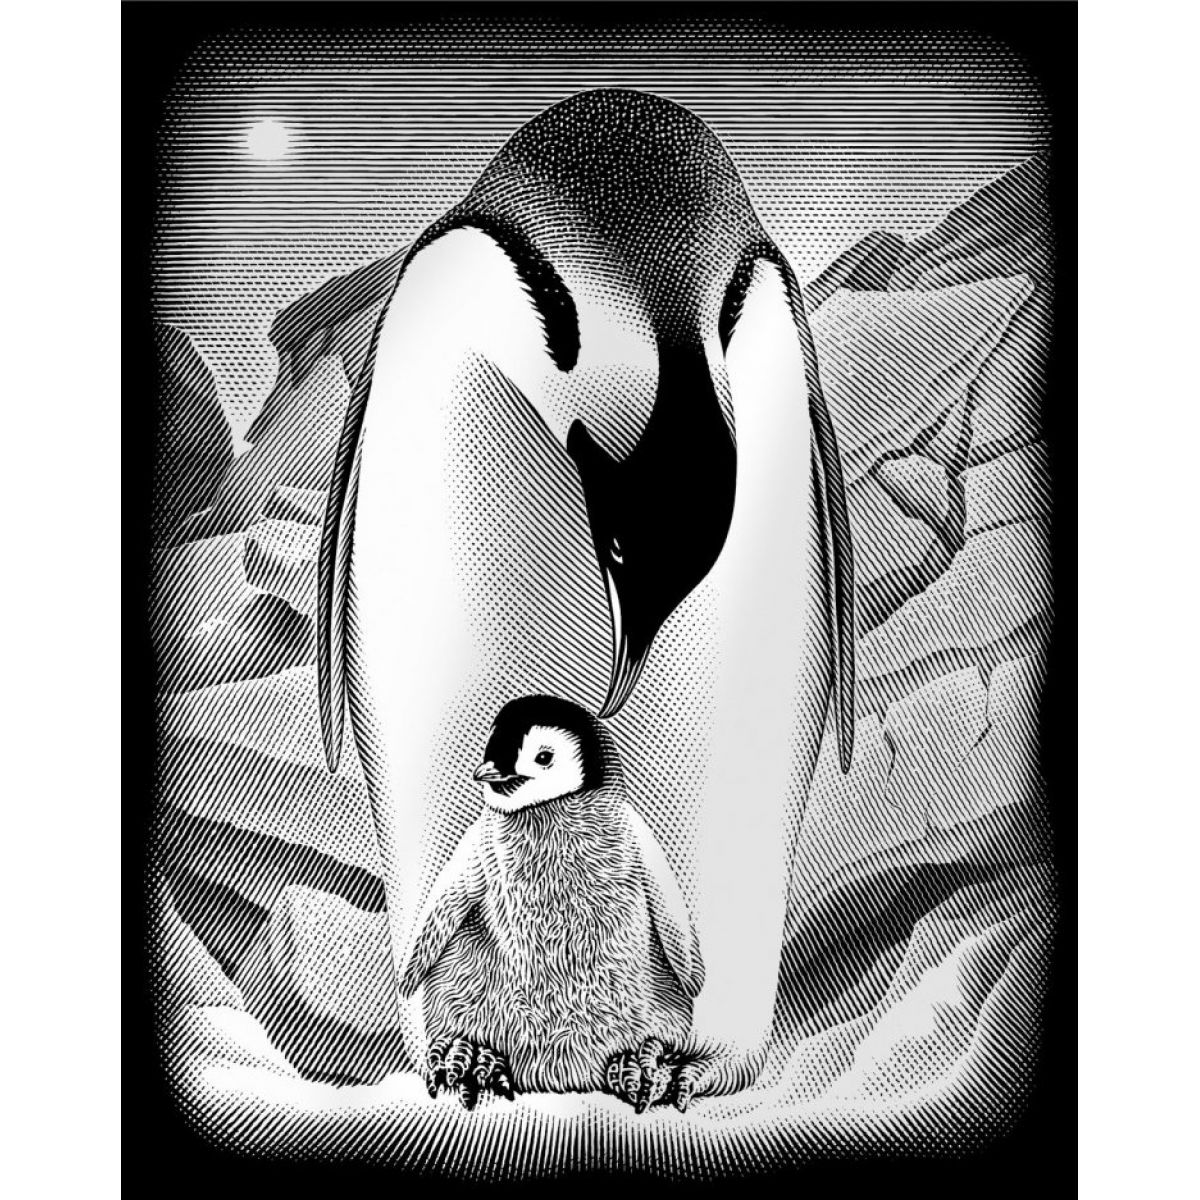 Creatoys Reeves Škrábací obrázek stříbrný 20 x 25 cm - Tučňáci